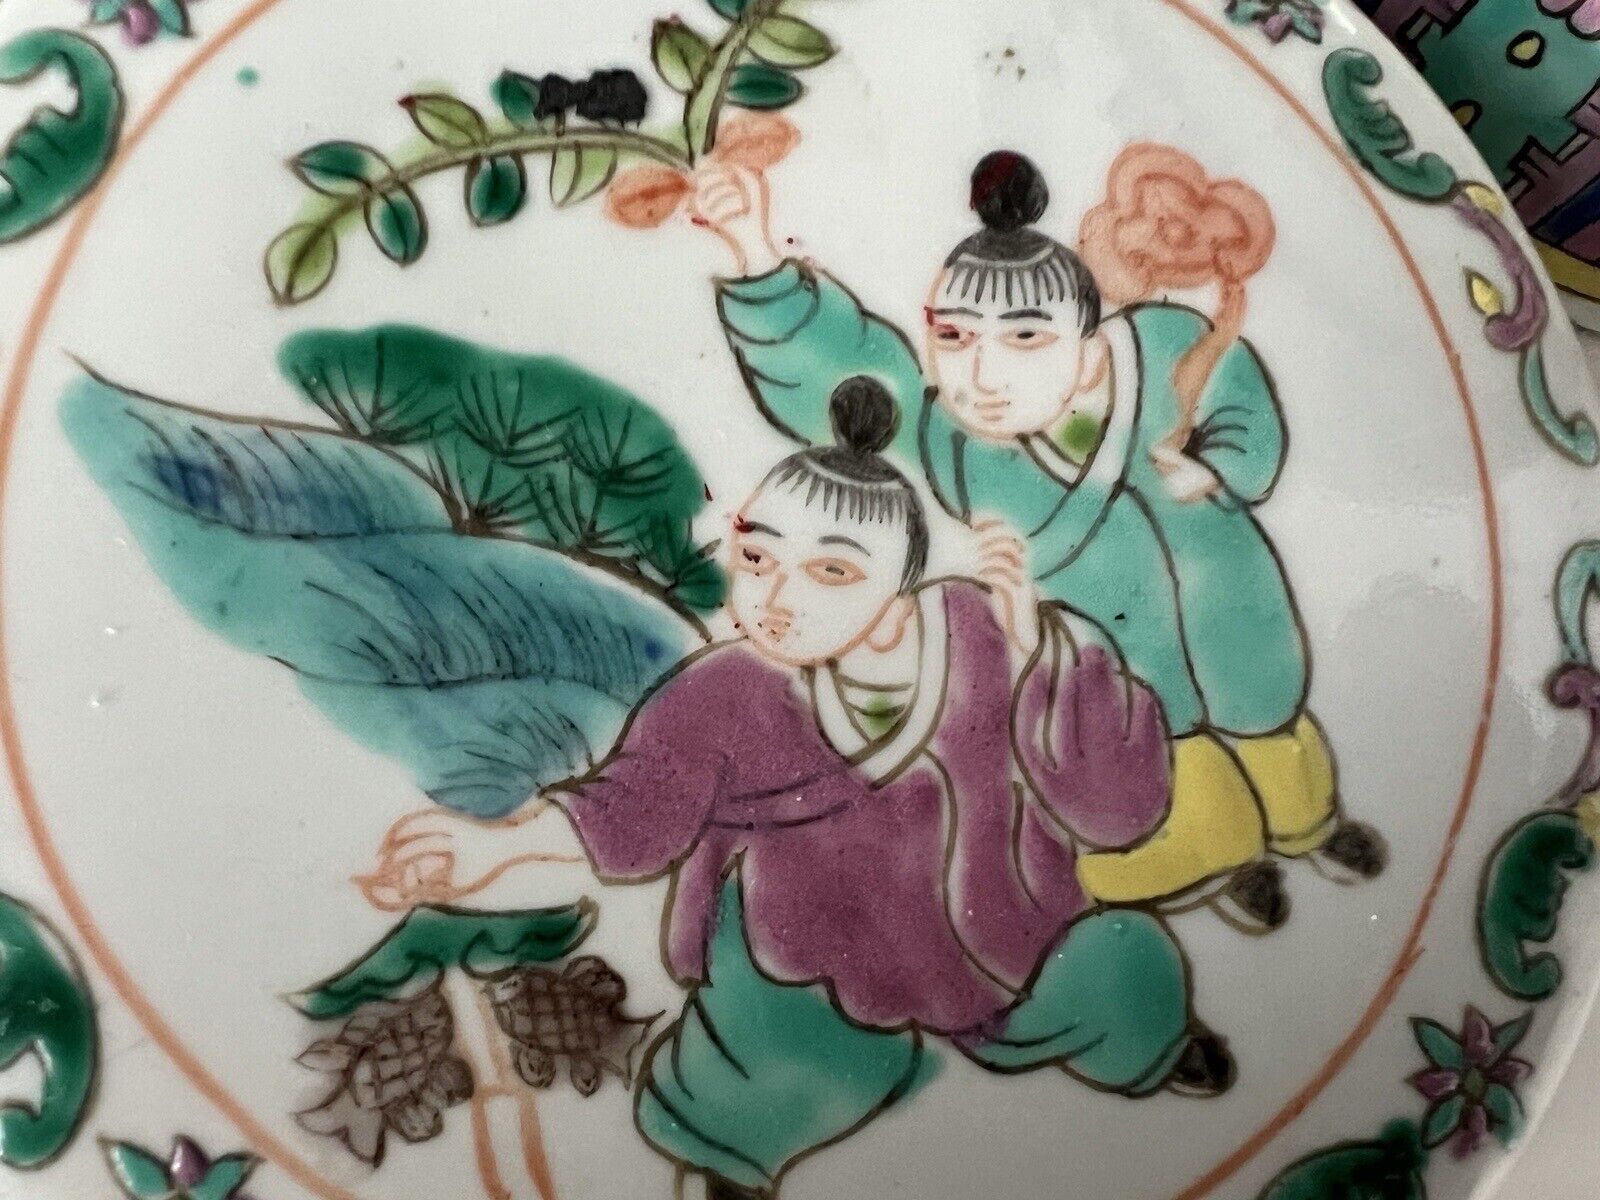 2 Antique Chinese Hand Paint Dragon Children Cylinder Hallmark Famille Jars 6" Без бренда - фотография #10